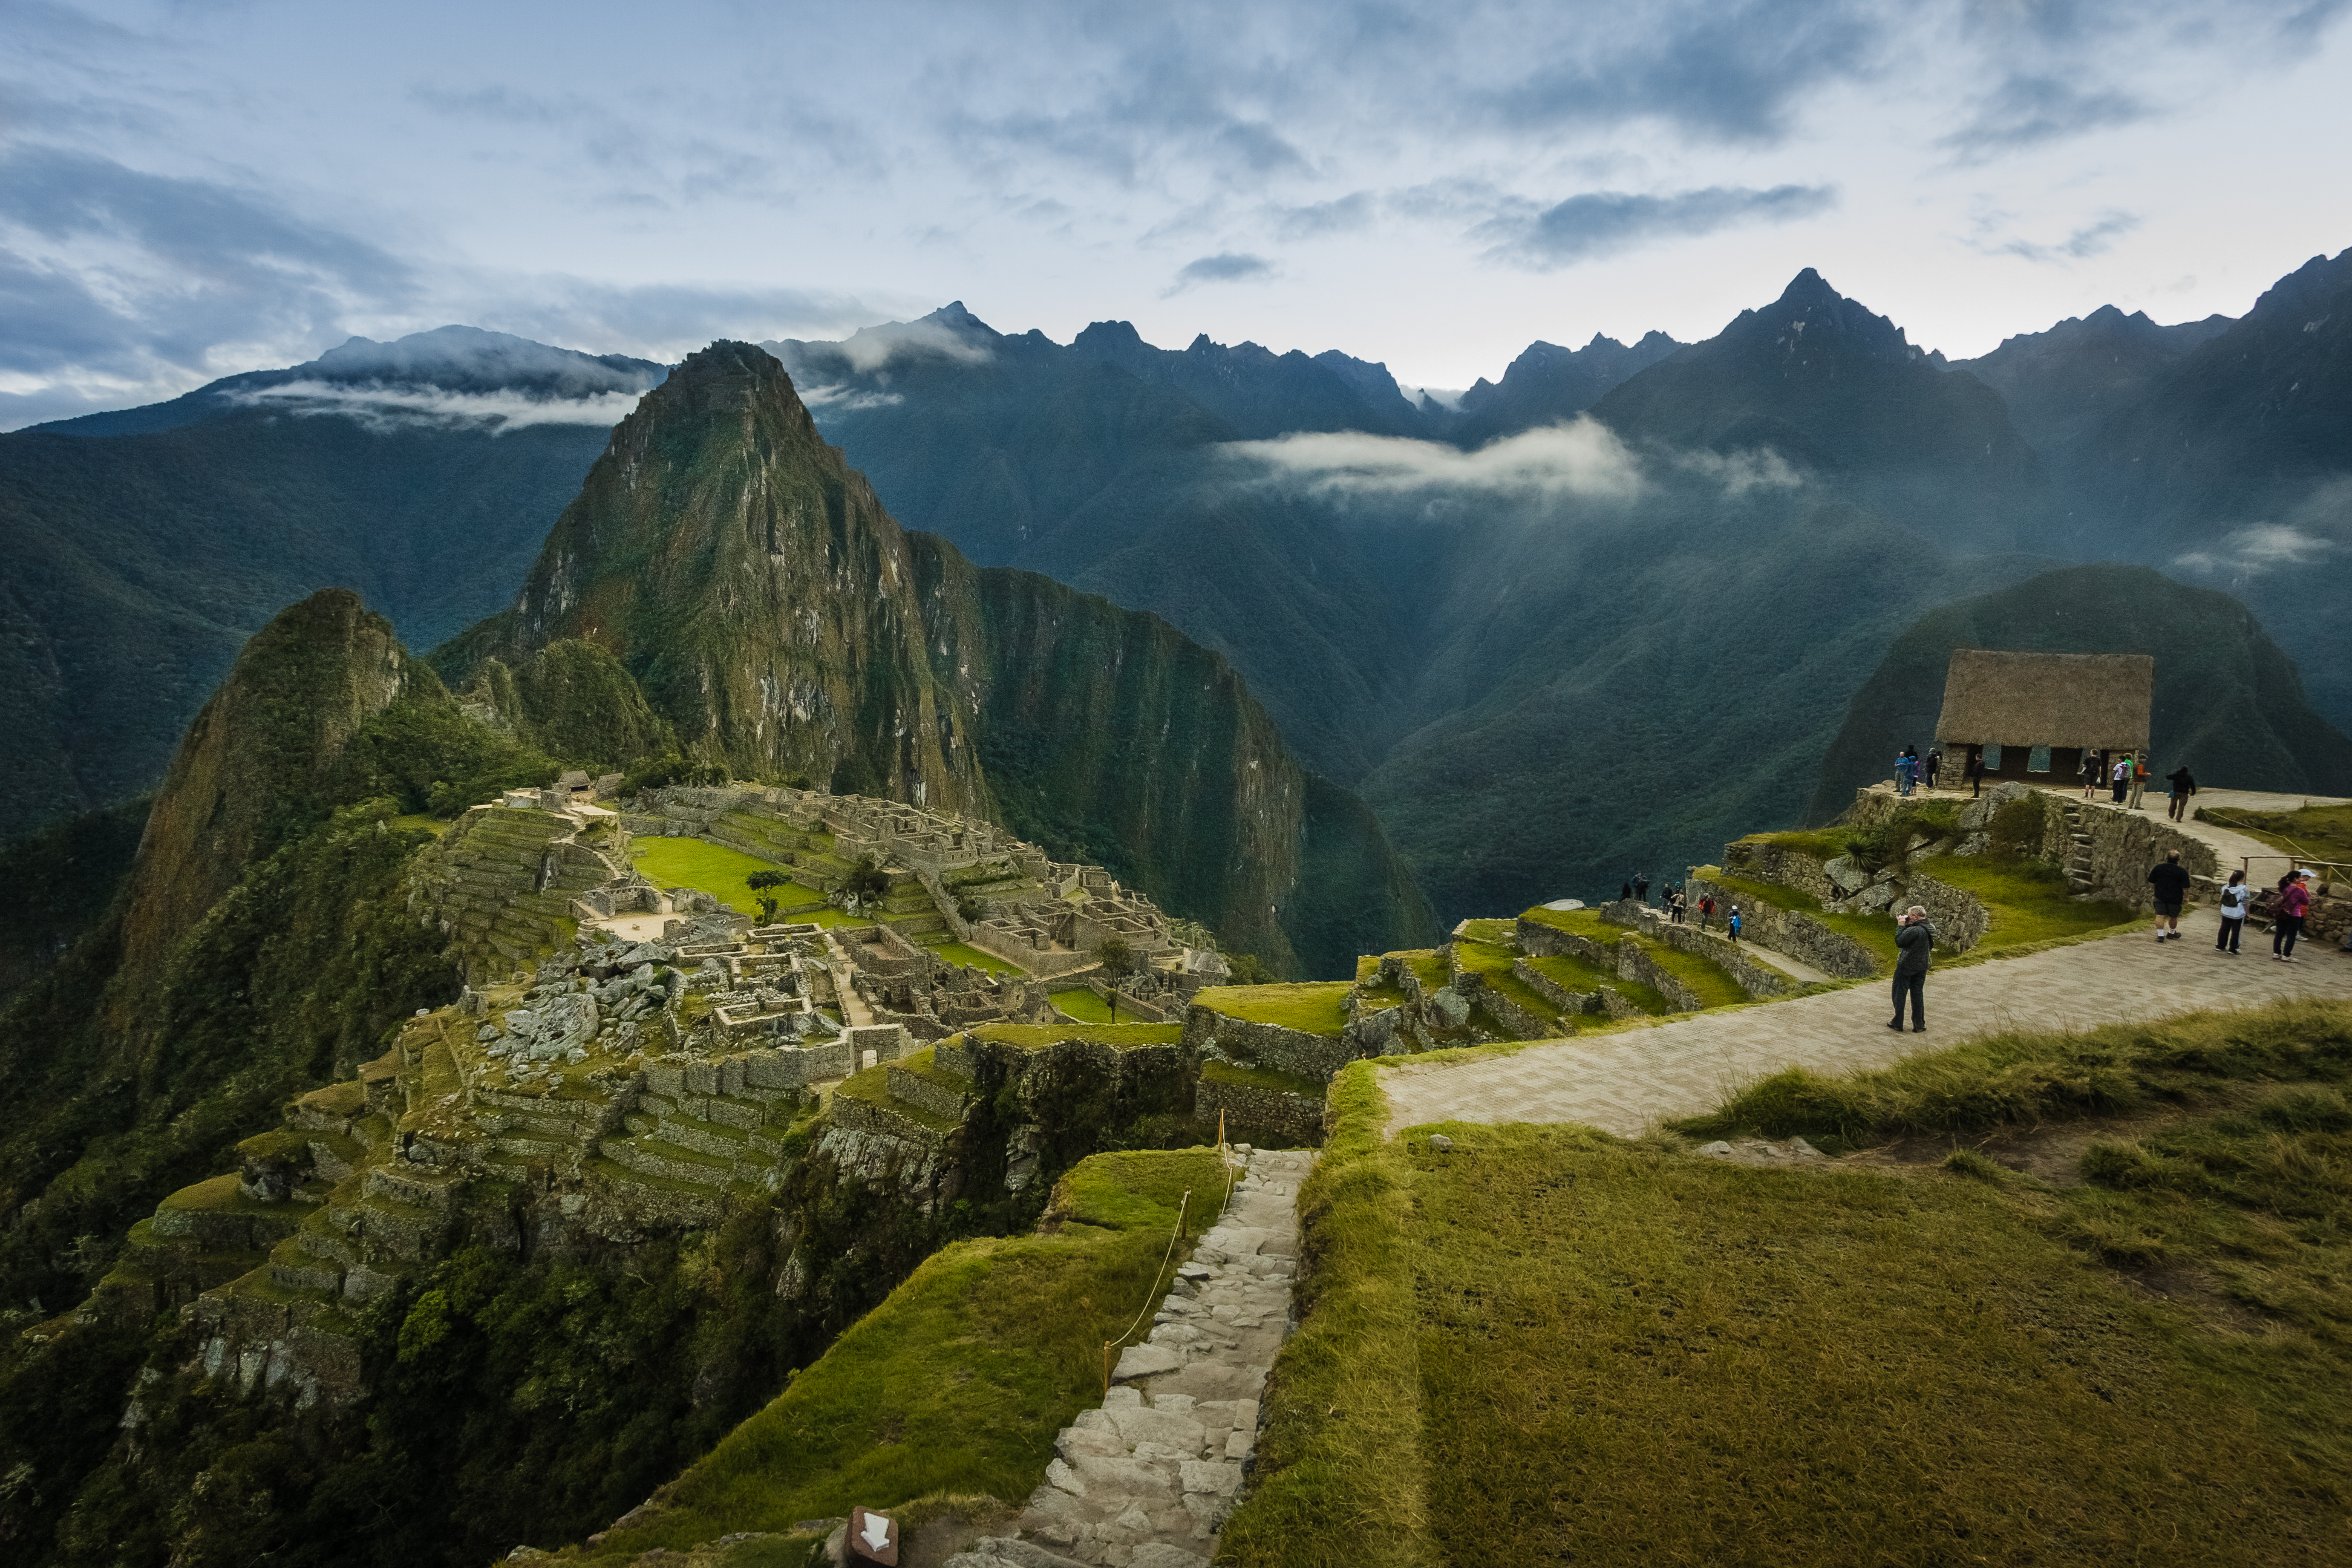 Machu Picchu - Apus Peru Adventure Travel Specialists